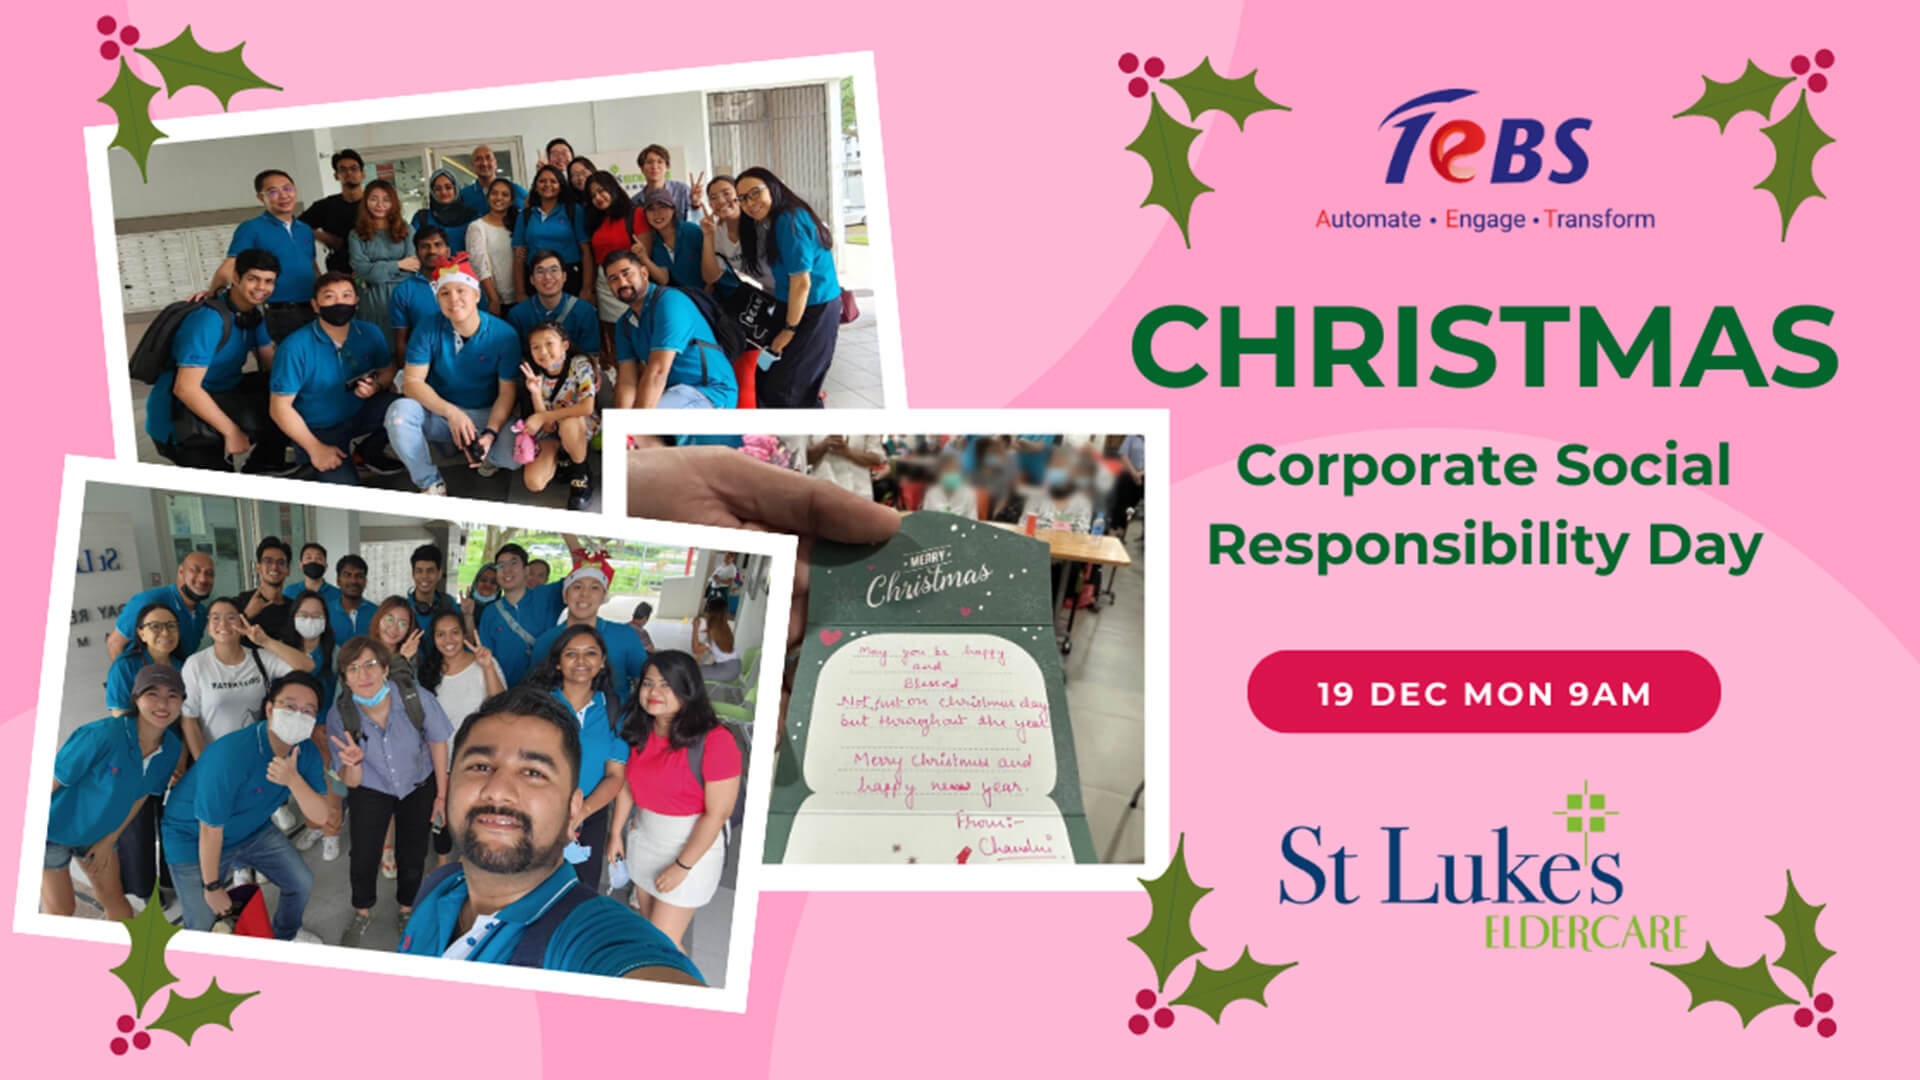 Christmas celebration with St.Lukes Eldercare Centre